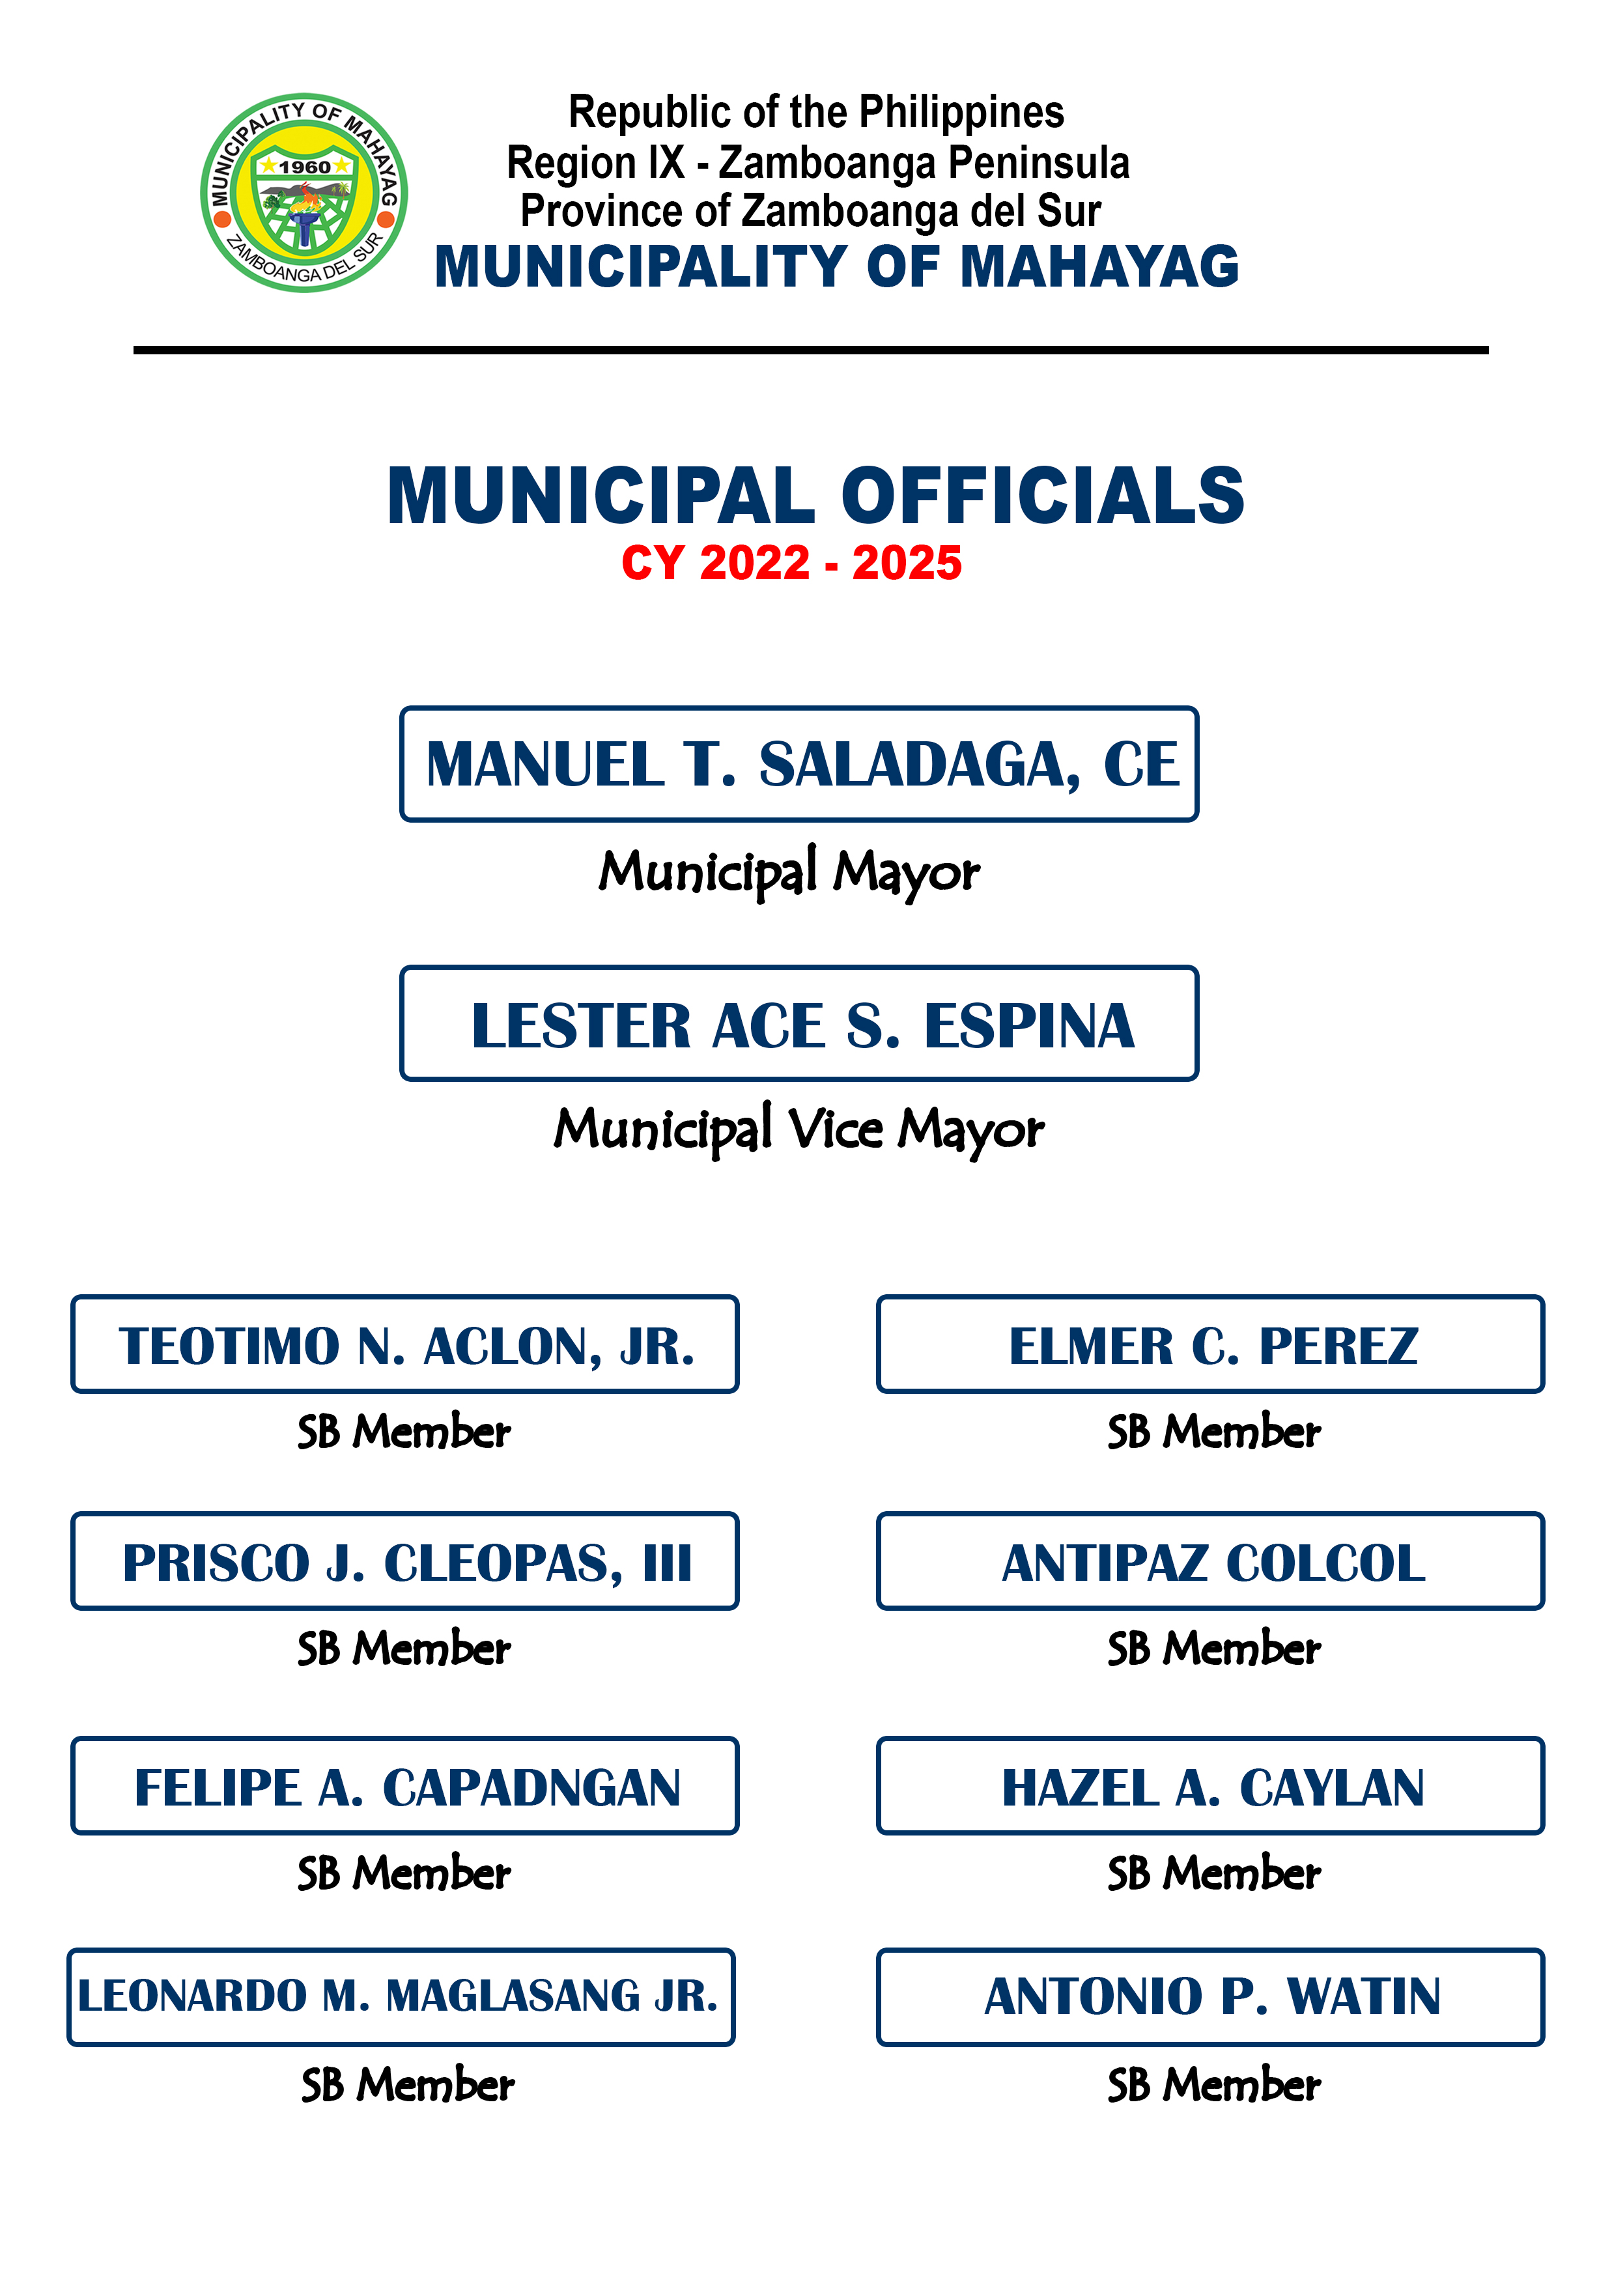 Municipal Officials